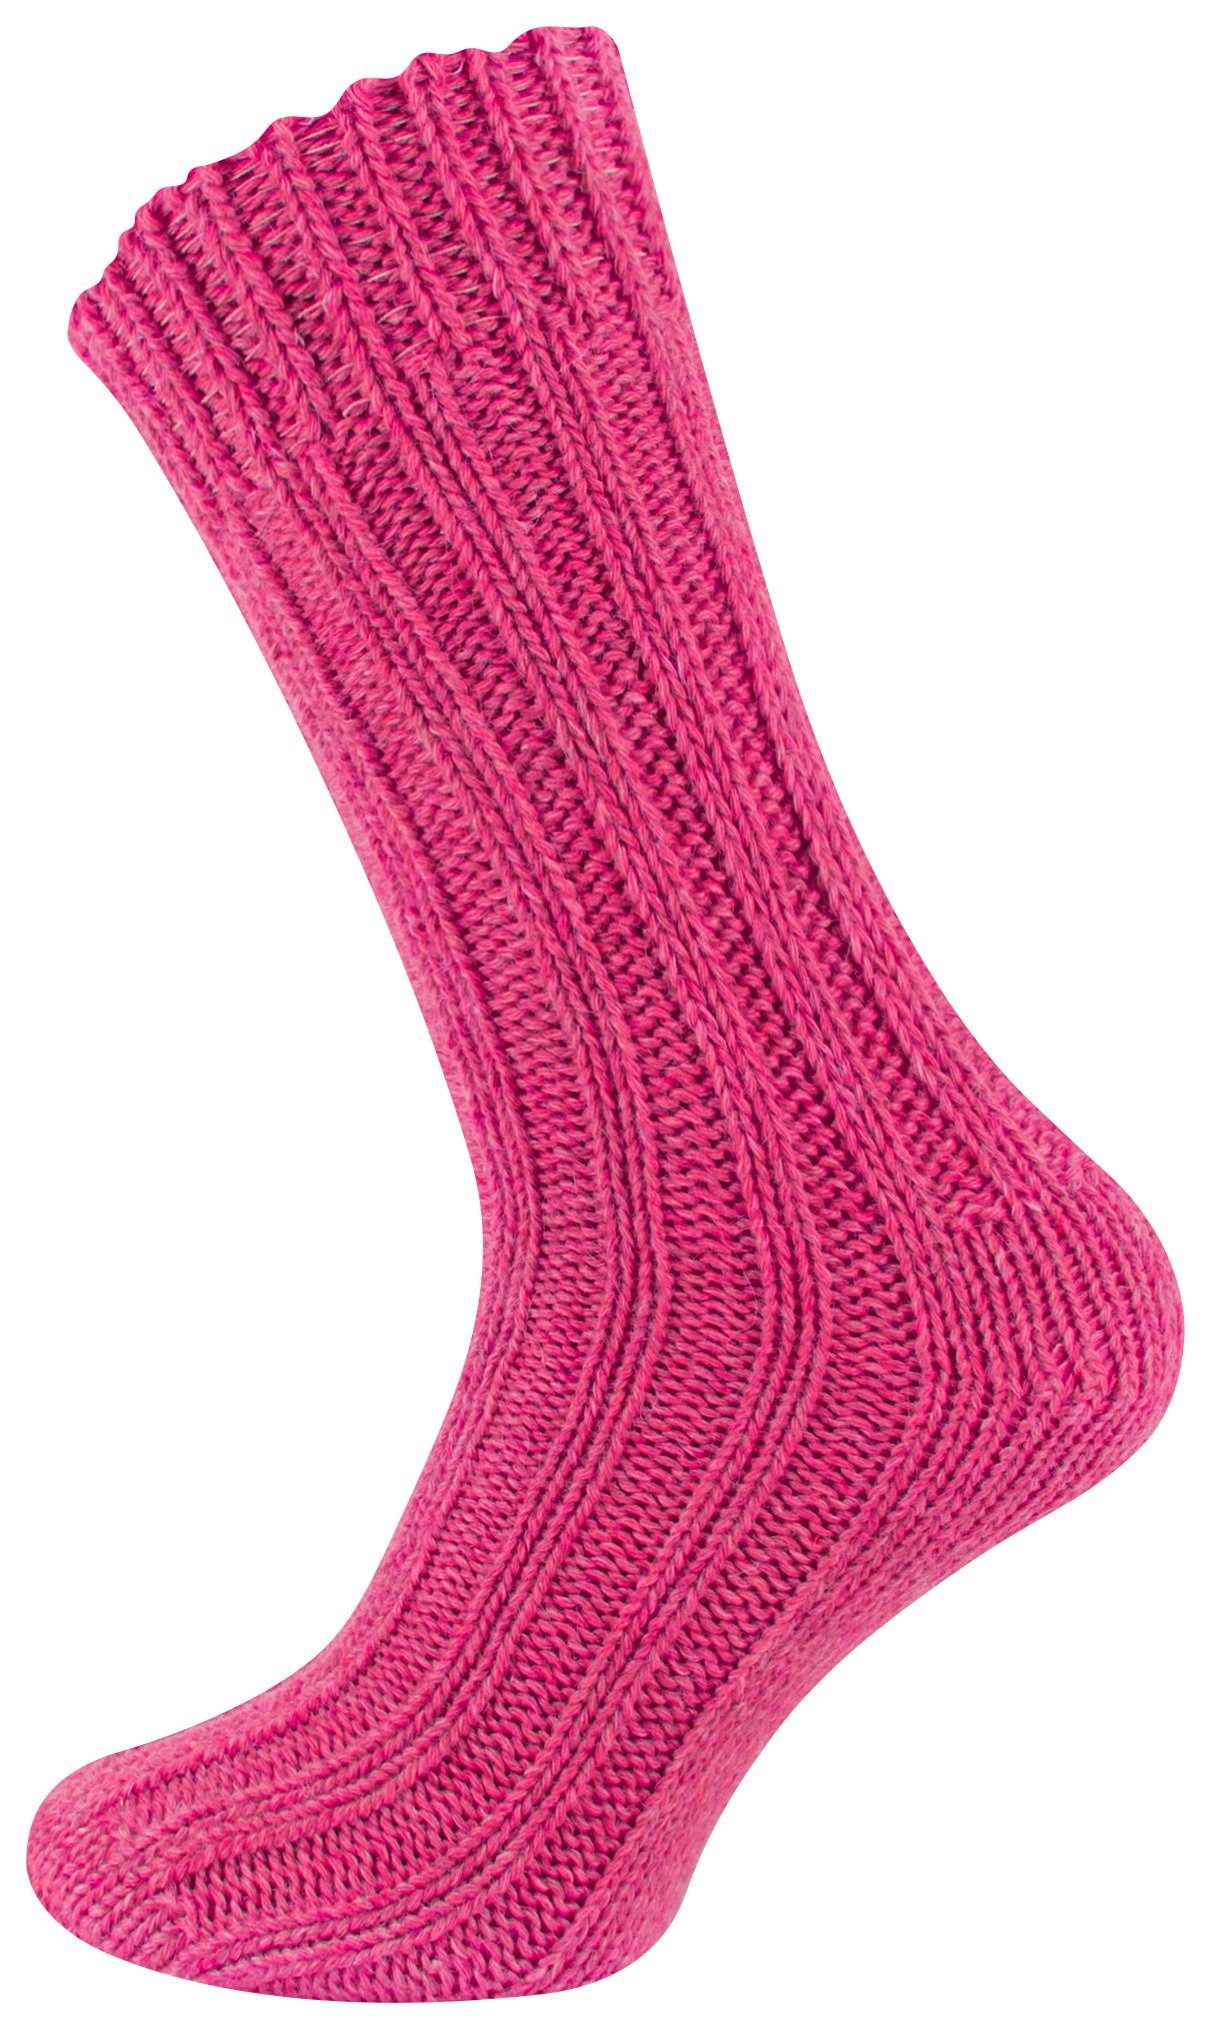 Socken (4-Paar) Alpakasocken und ökologisch Unisex Cotton vorgewaschen gefärbt Pink/Hellblau Prime®